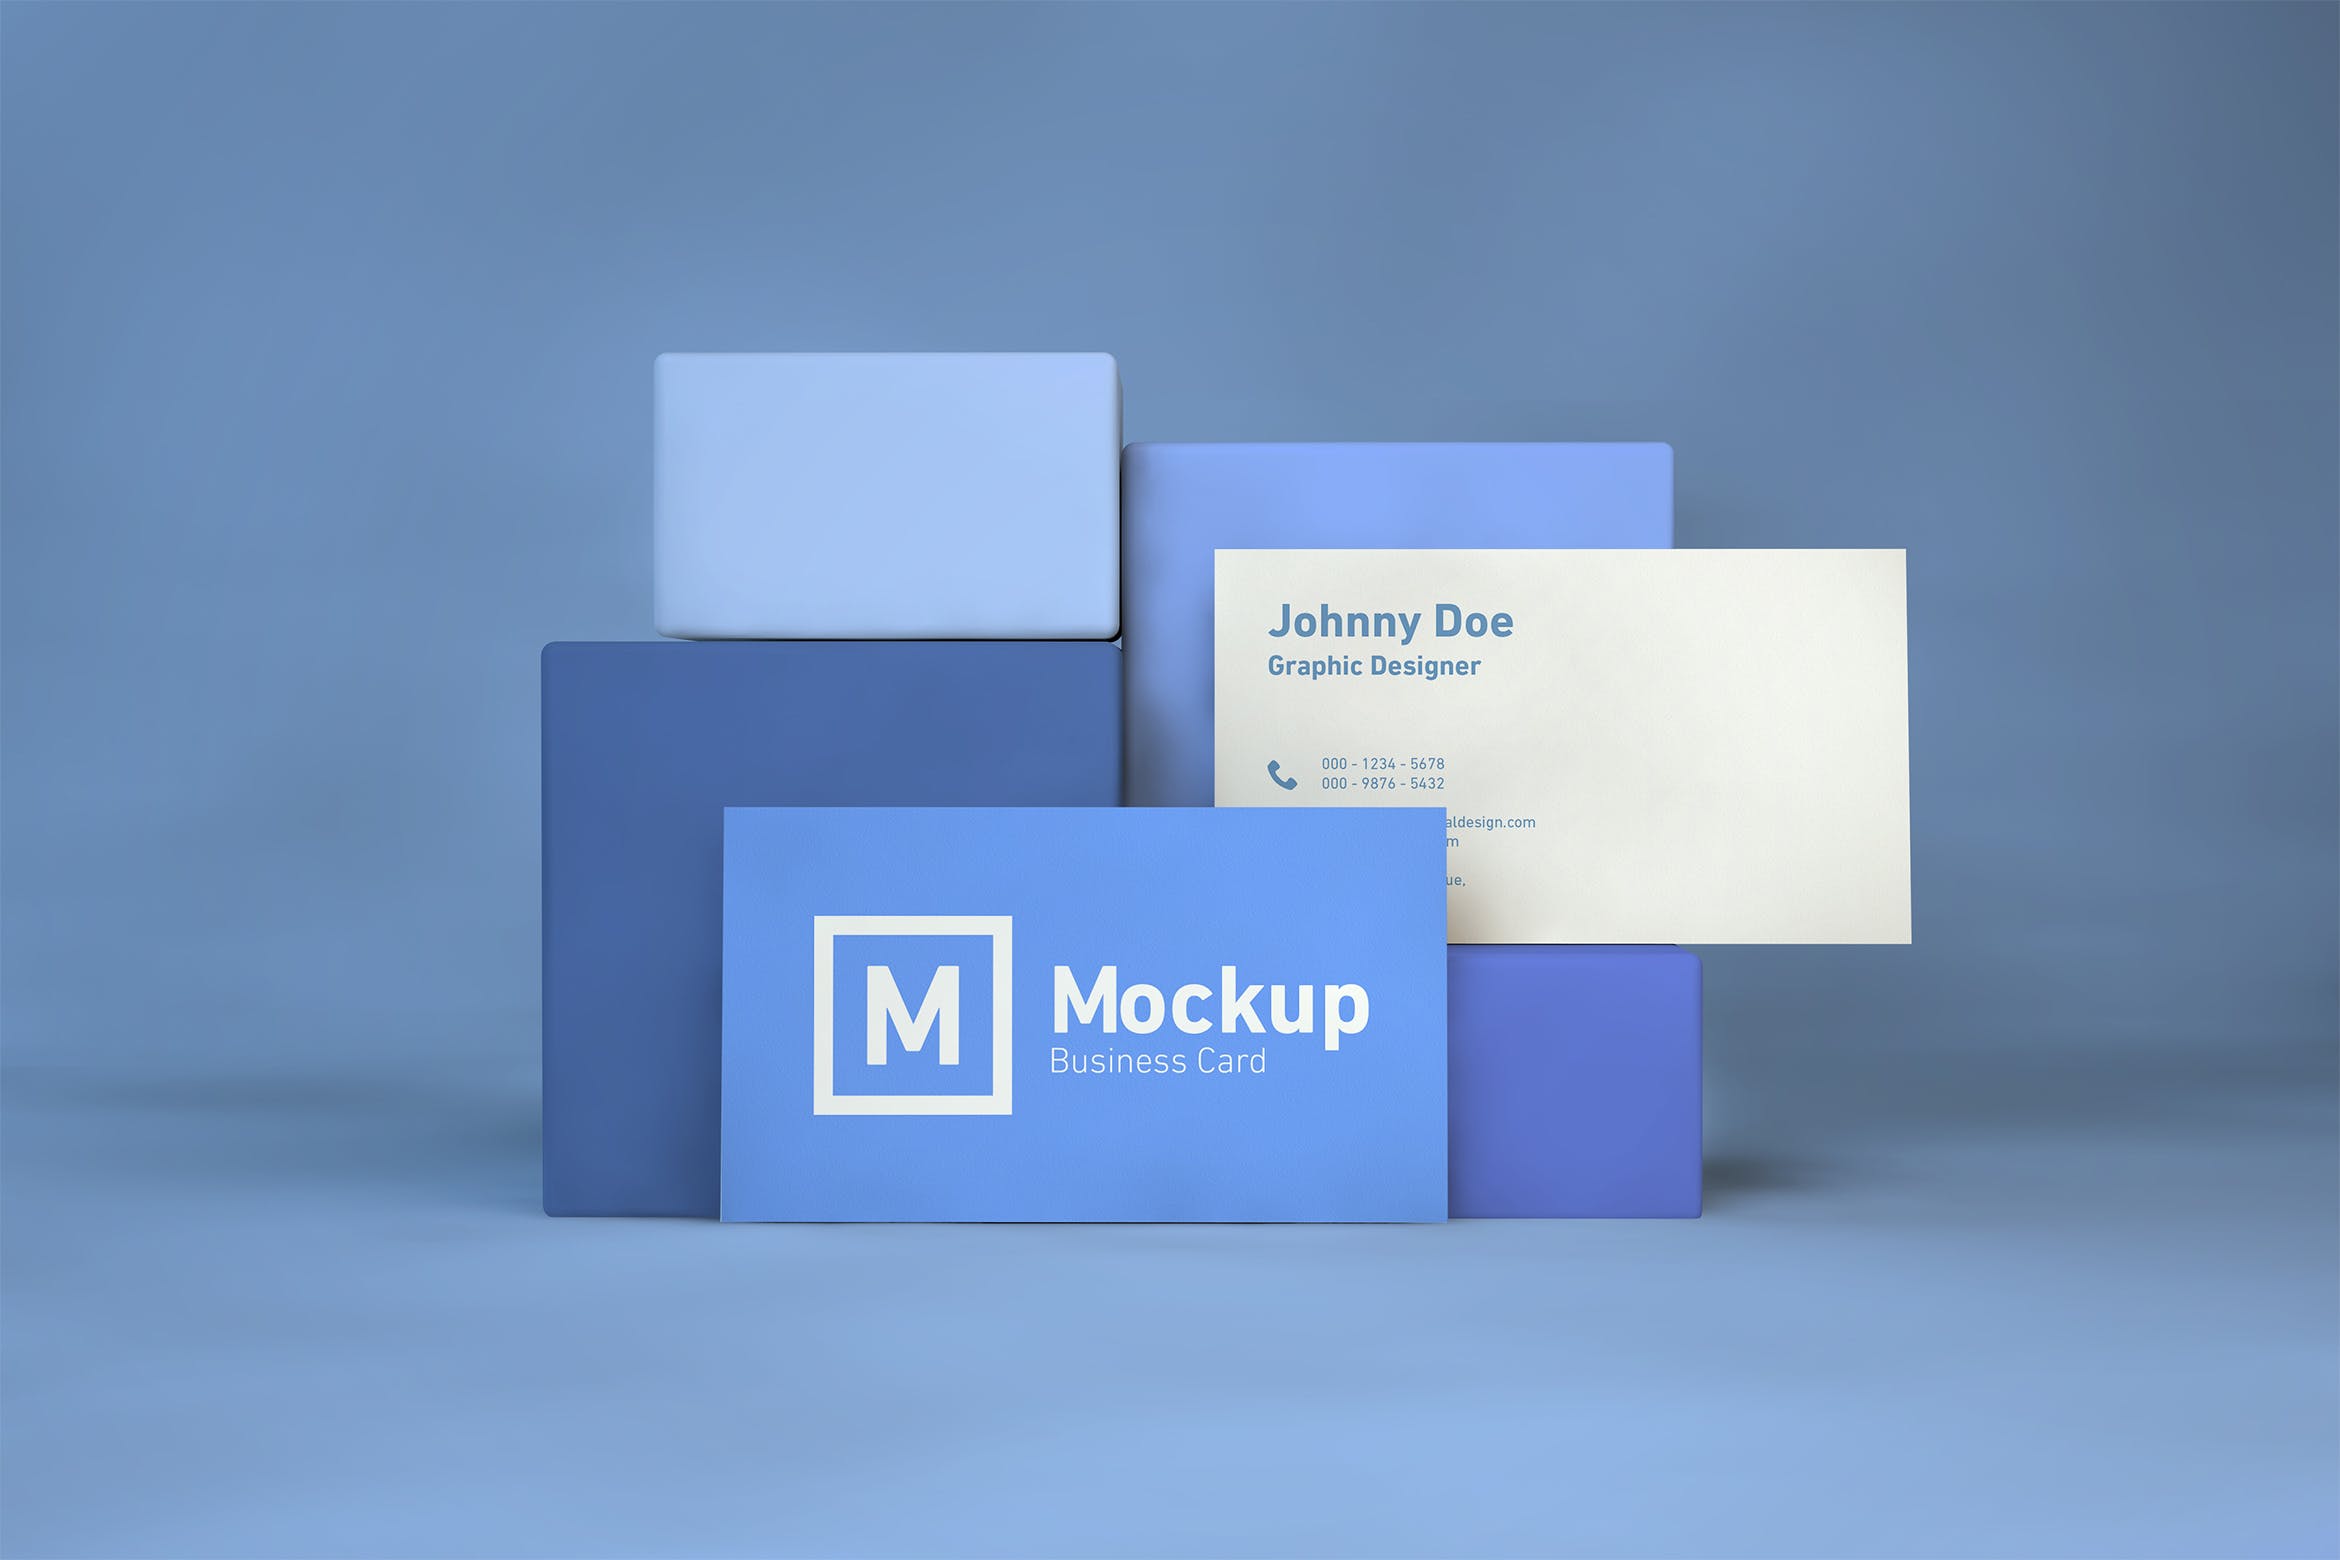 企业名片双面设计效果展示非凡图库精选 Business Card On Blocks Mockup插图